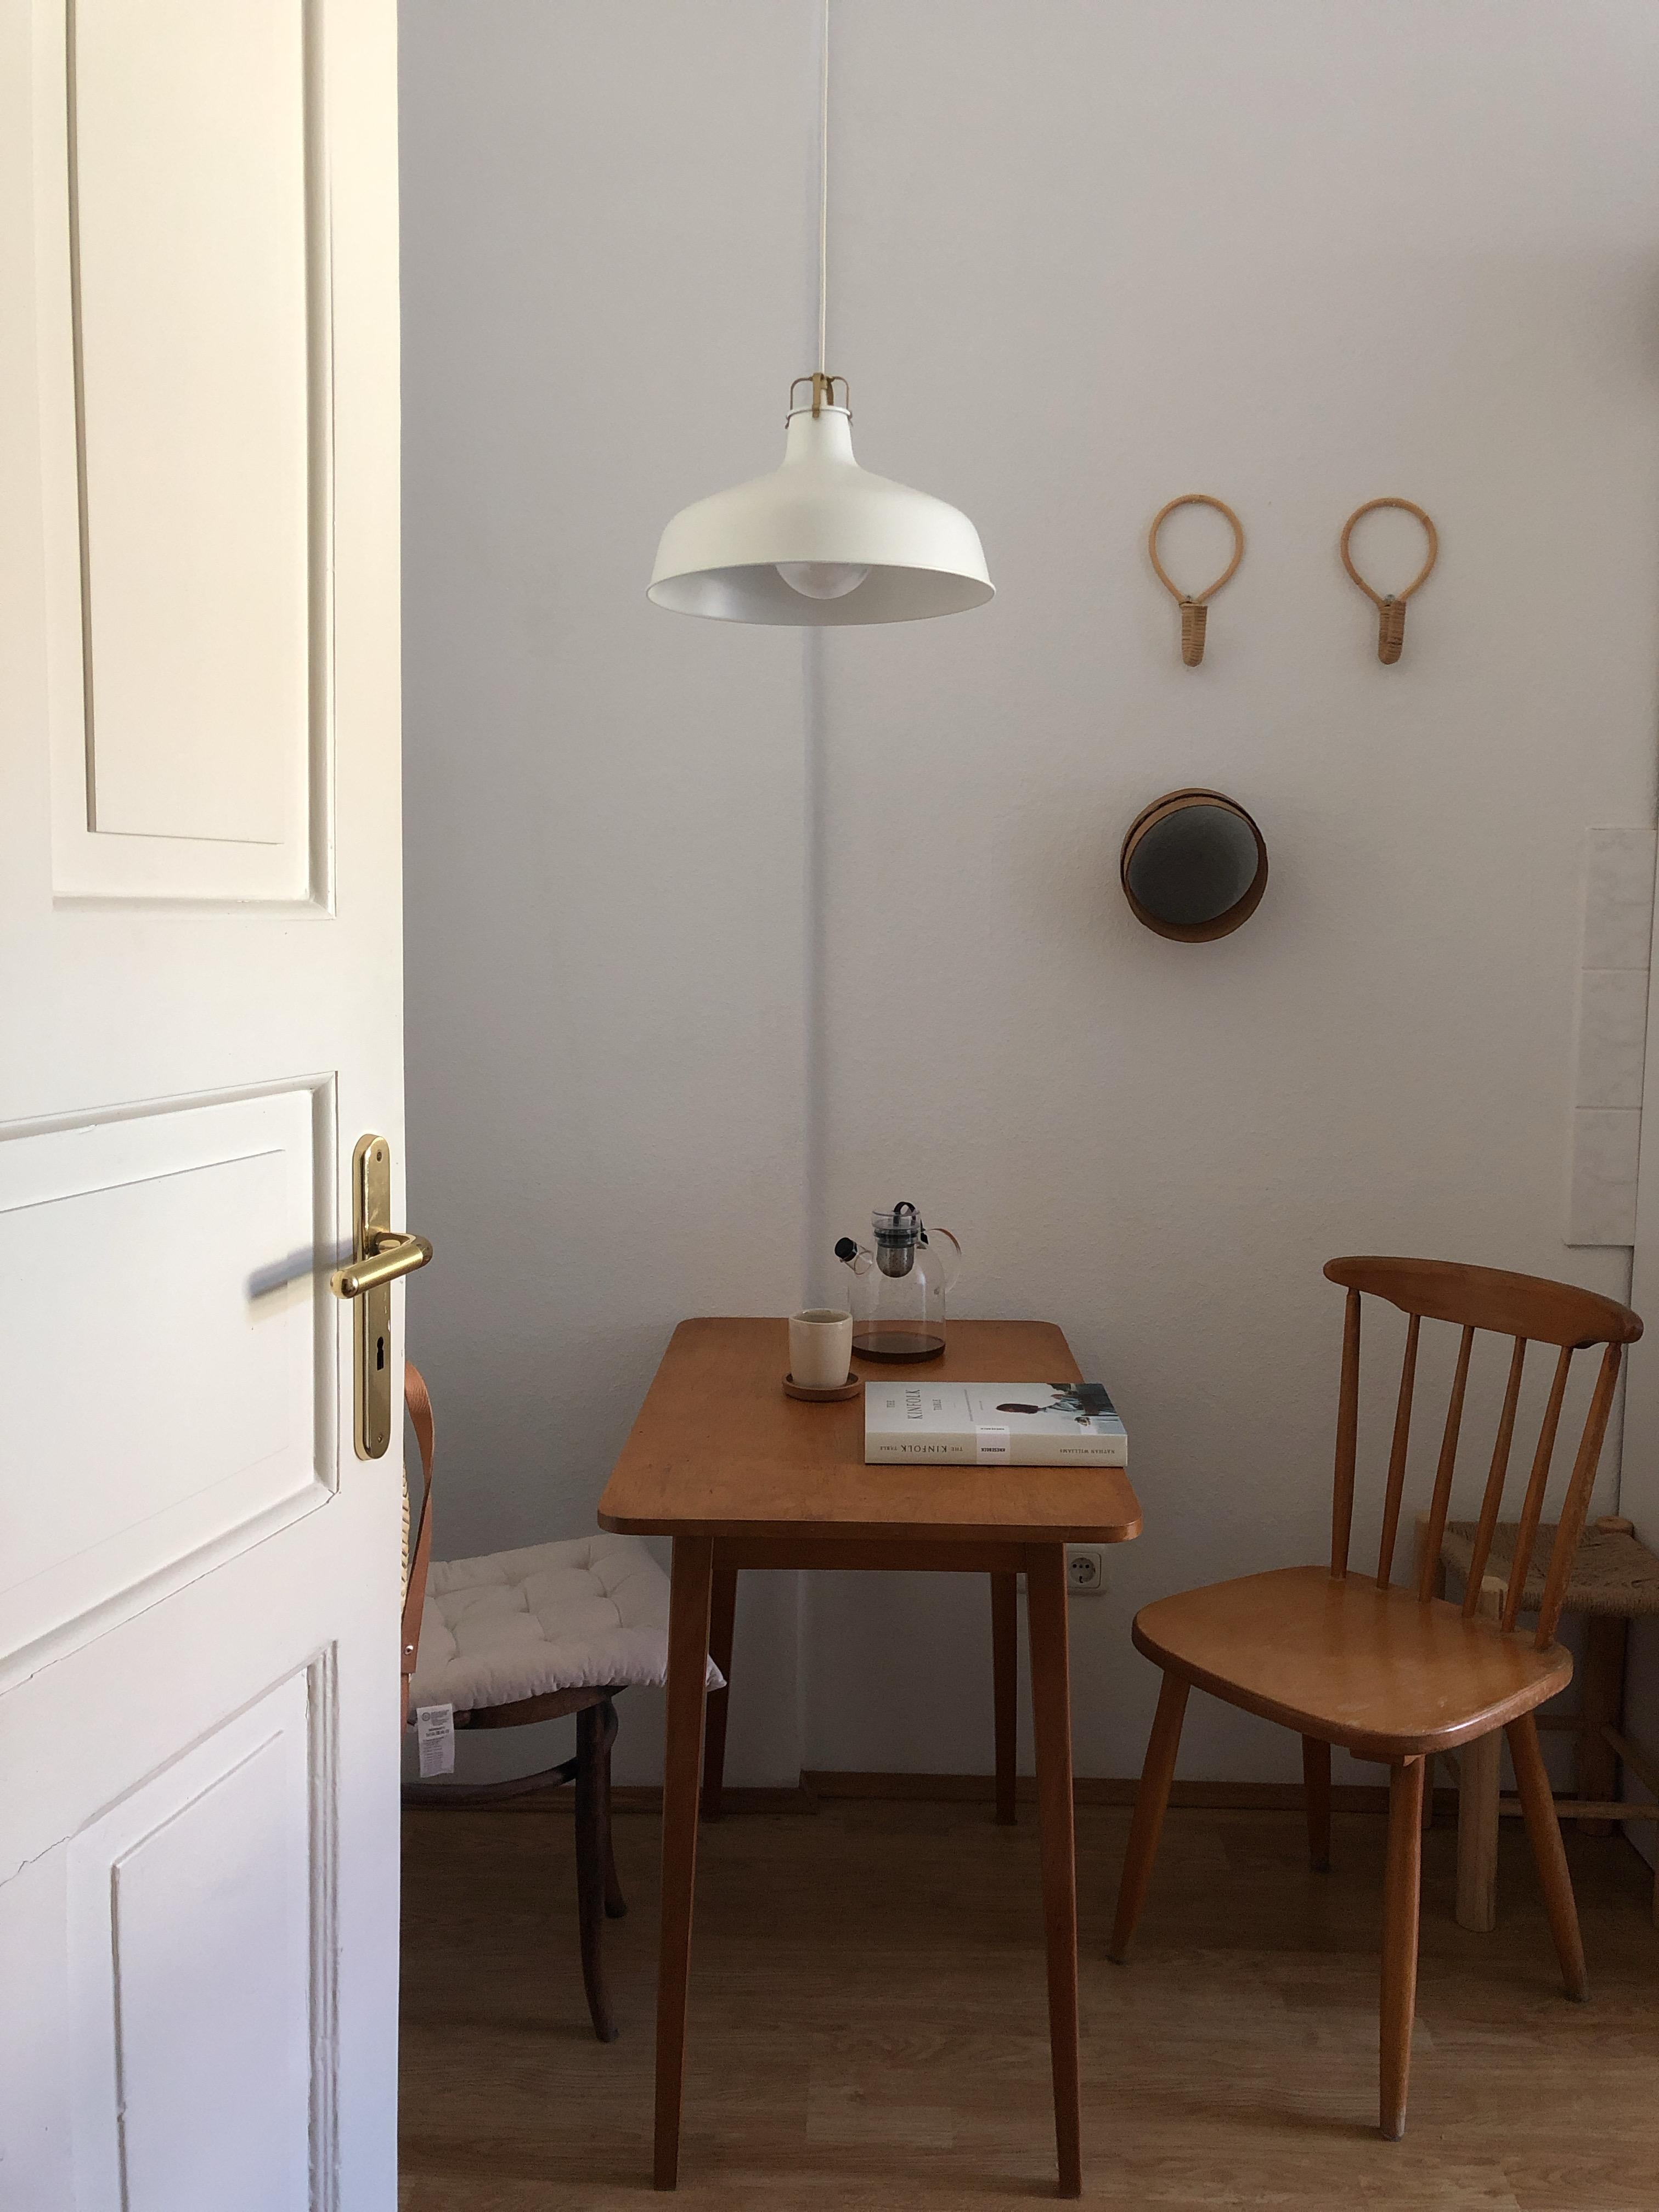 #küche #altbau #altemöbel #minimalistisch #sitzecke